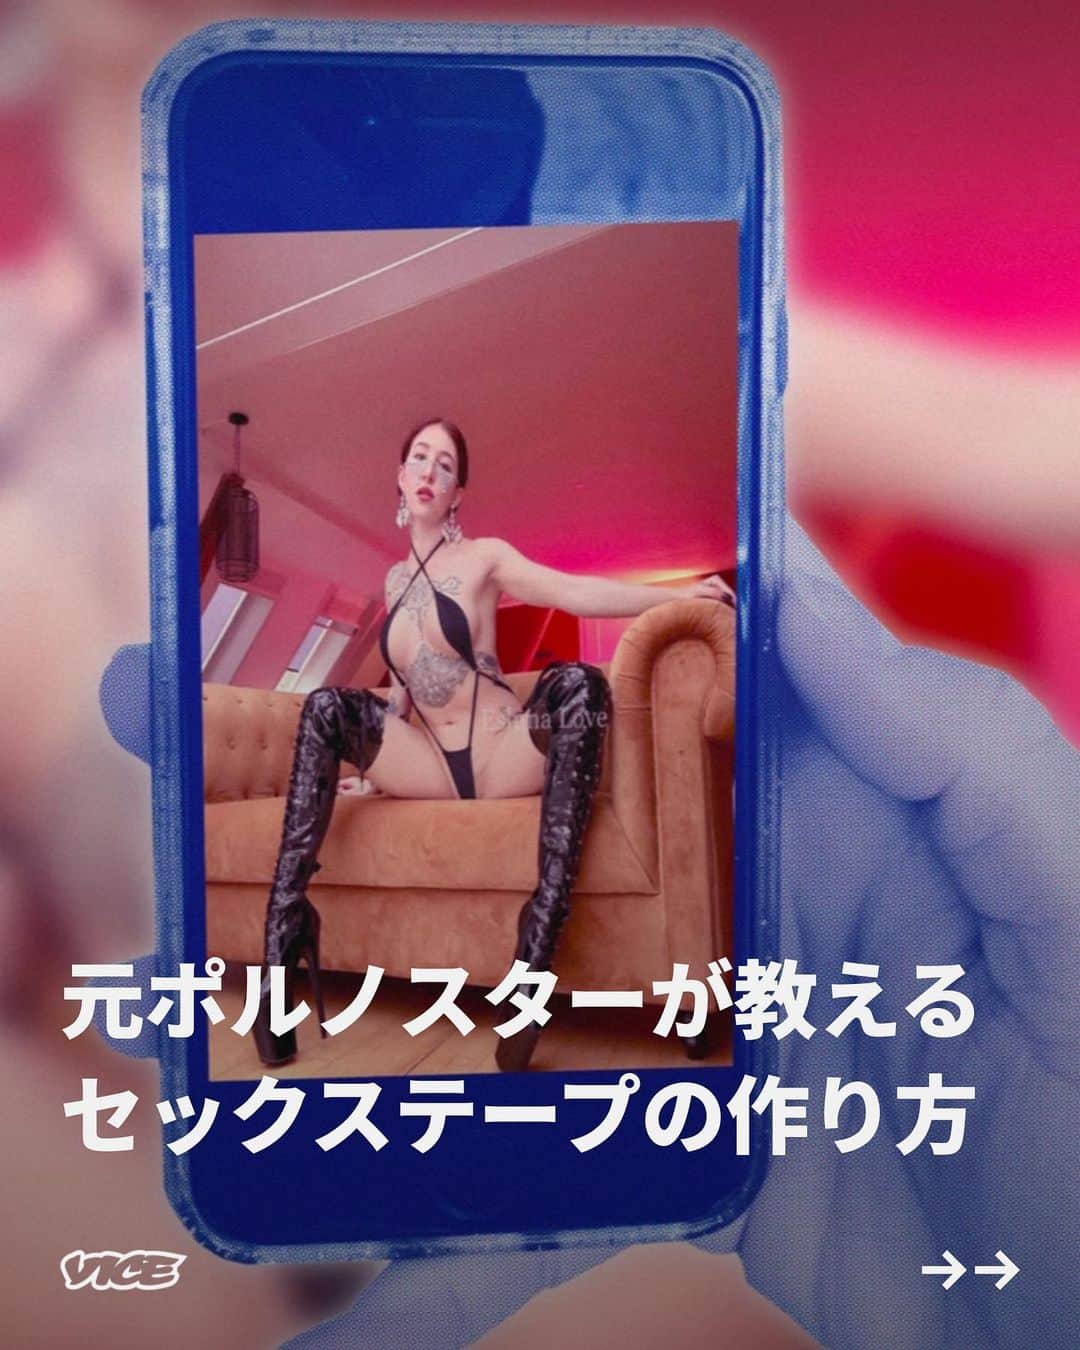 VICE Japanのインスタグラム：「自慰行為のためであれ純粋なインスピレーションのためであれ、ポルノは私たちの多くにとって性行為の一部となっている。だが、日々公開されるアダルトコンテンツの世界に、自ら貢献することに興味があるひともいるだろう。楽しく、セクシーで、倫理的なアマチュア動画をつくるにはどうすればいいのか。その世界に足を踏み入れるには、どうすれば安全かつ責任をもって、自分の姿をさらけ出せるのだろう。  元セクシー女優のエスルーナ・ラブ（Esluna Love）は、現在自宅でビデオを制作するエロティックパフォーマー／コンテンツクリエイターとして活動している。セックステープにはそれほど多くのルールは存在せず、「出演者全員が楽しんで」いさえすればいい、と彼女は説明するが、「このようなコンテンツを制作・配信するときに覚えておくべきことがいくつかある」という。ラブにその秘訣を解説してもらった。  記事詳細は @vicejapan プロフィールのリンクから  #vicejapan #vice #ヴァイスジャパン」